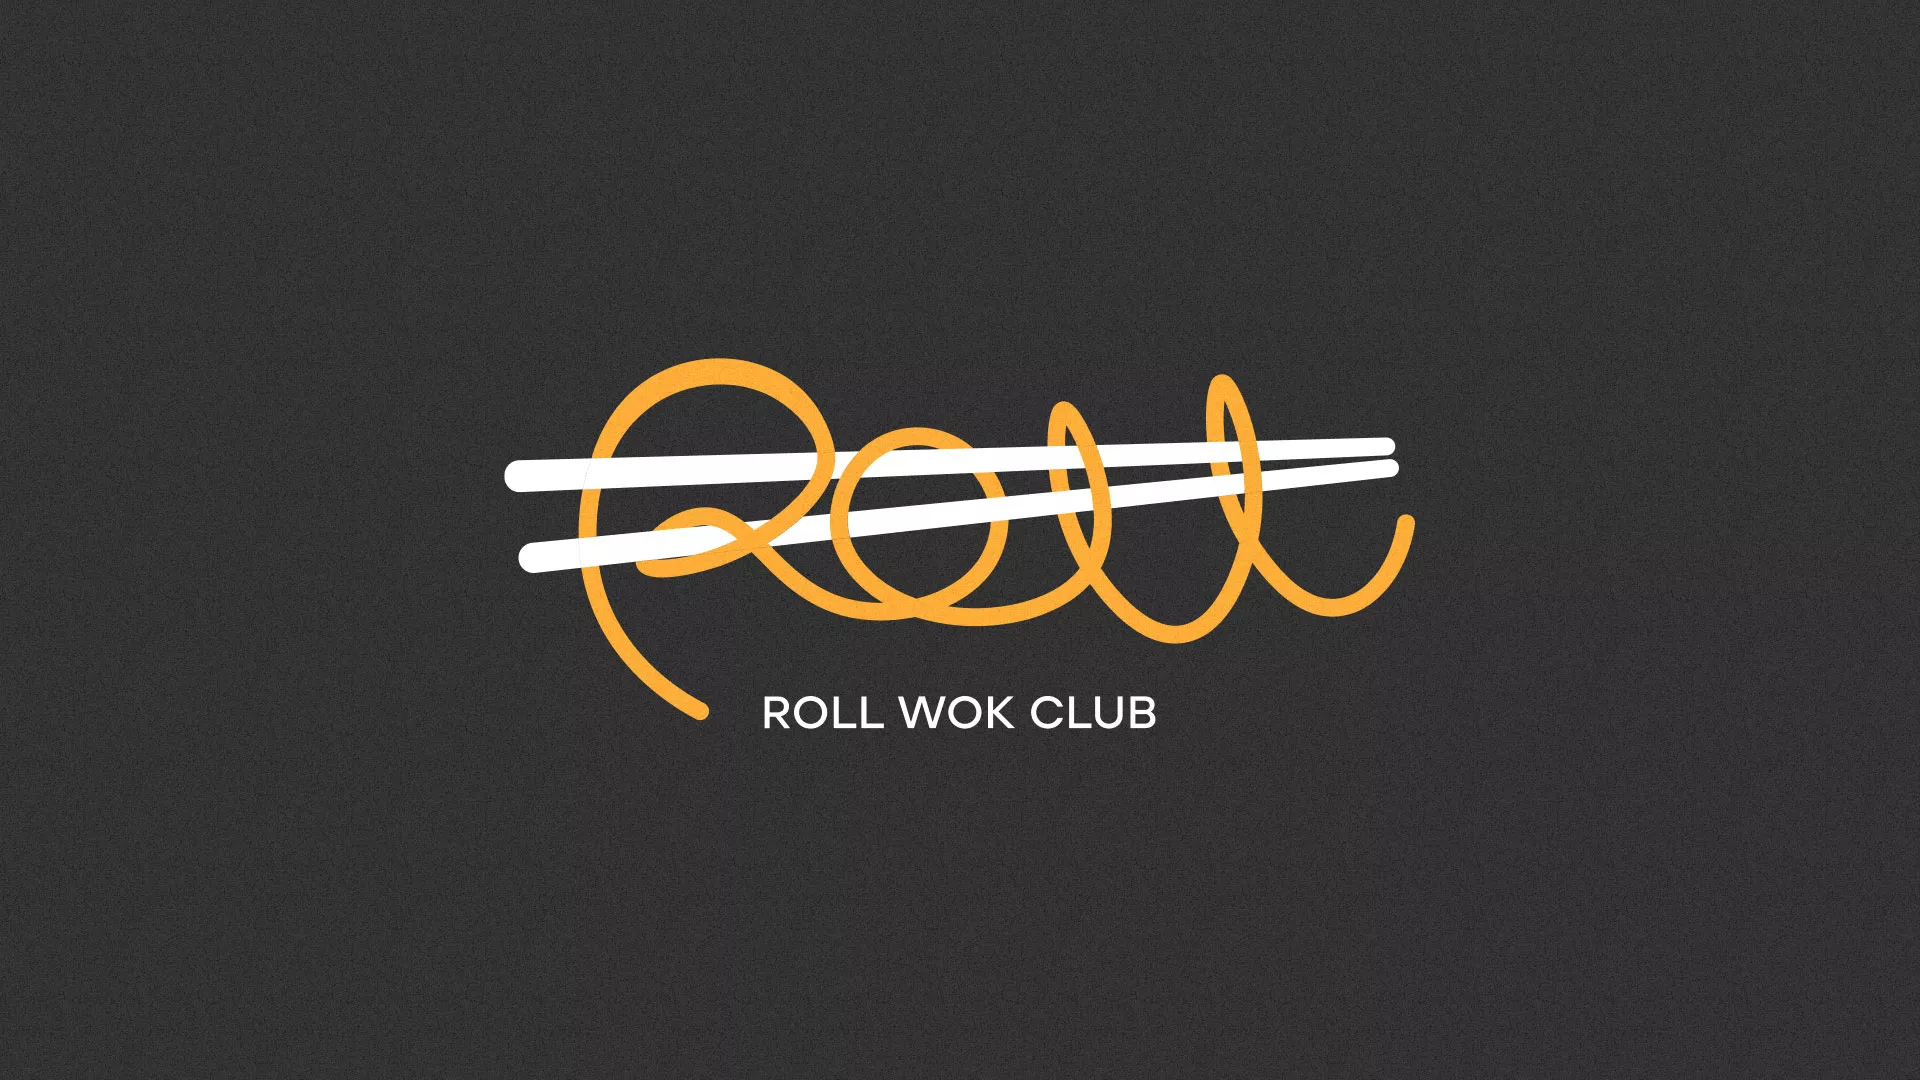 Создание дизайна листовок суши-бара «Roll Wok Club» в Вёшках